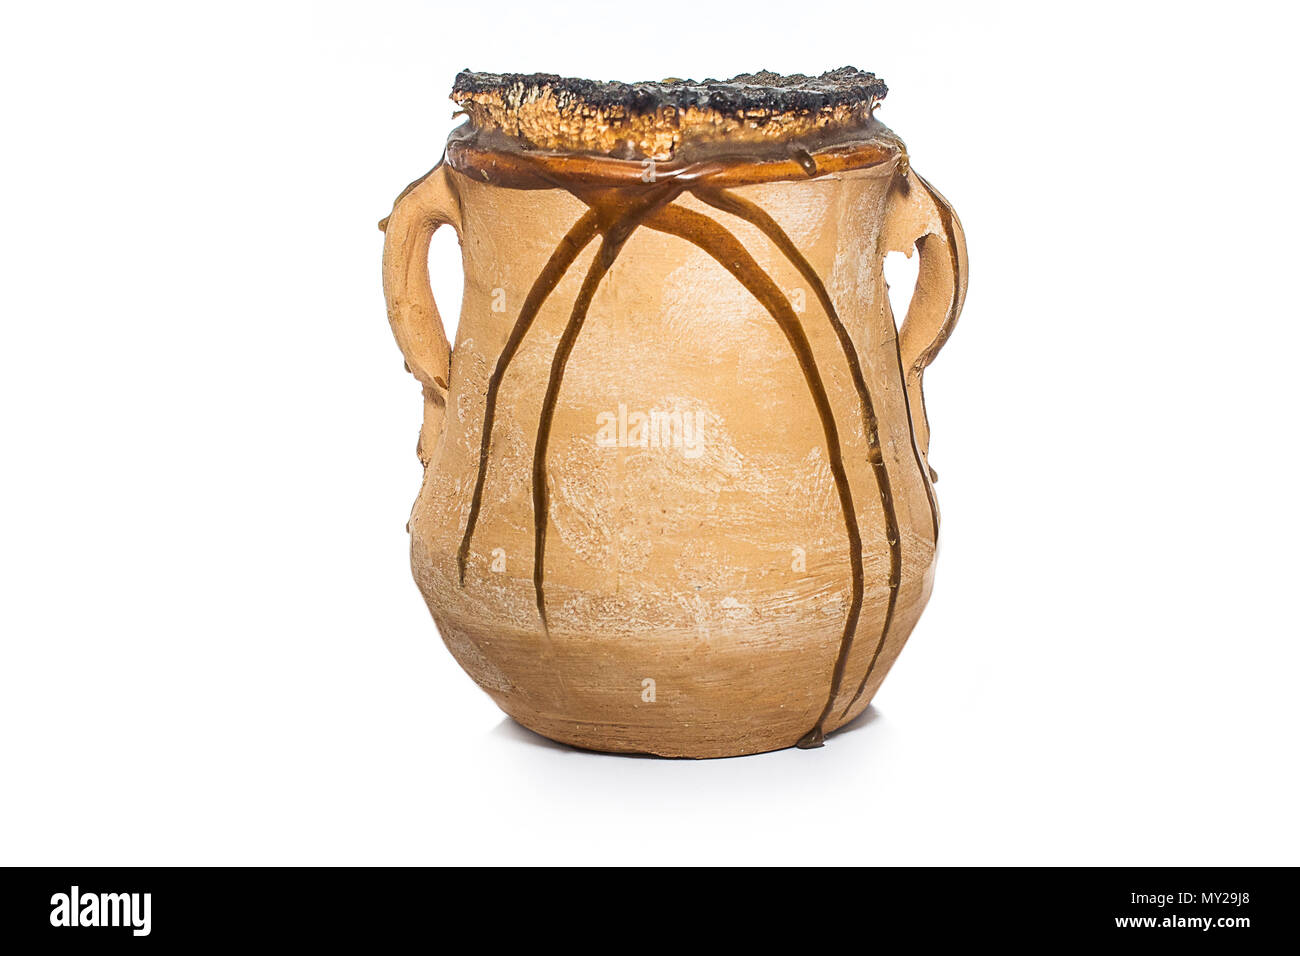 Honey jug isolated on white background Stock Photo